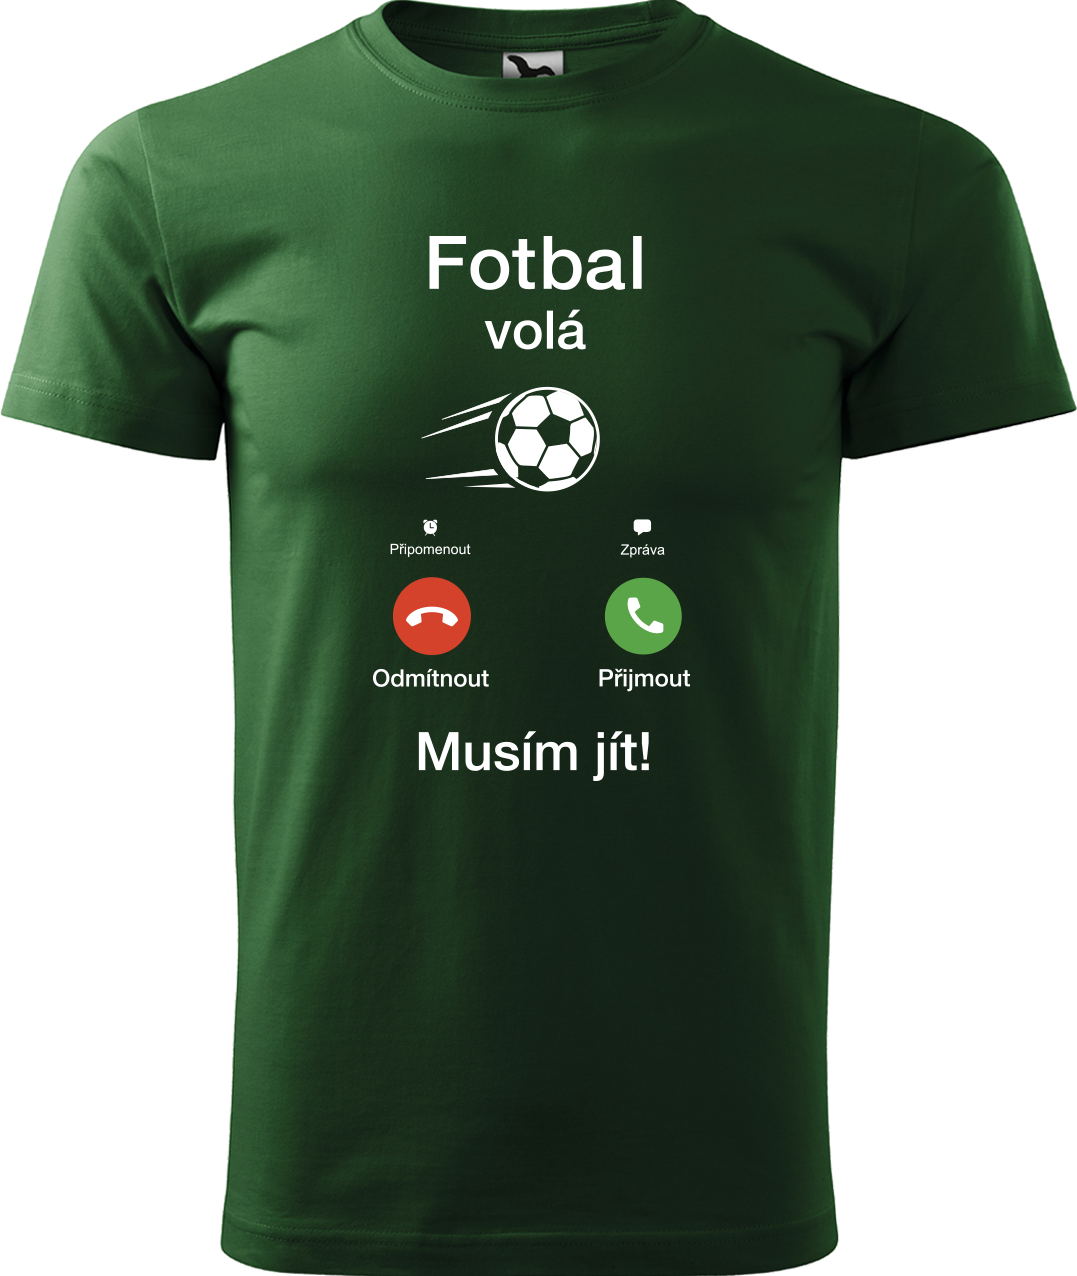 Tričko pro fotbalistu - Fotbal volá Velikost: L, Barva: Lahvově zelená (06)